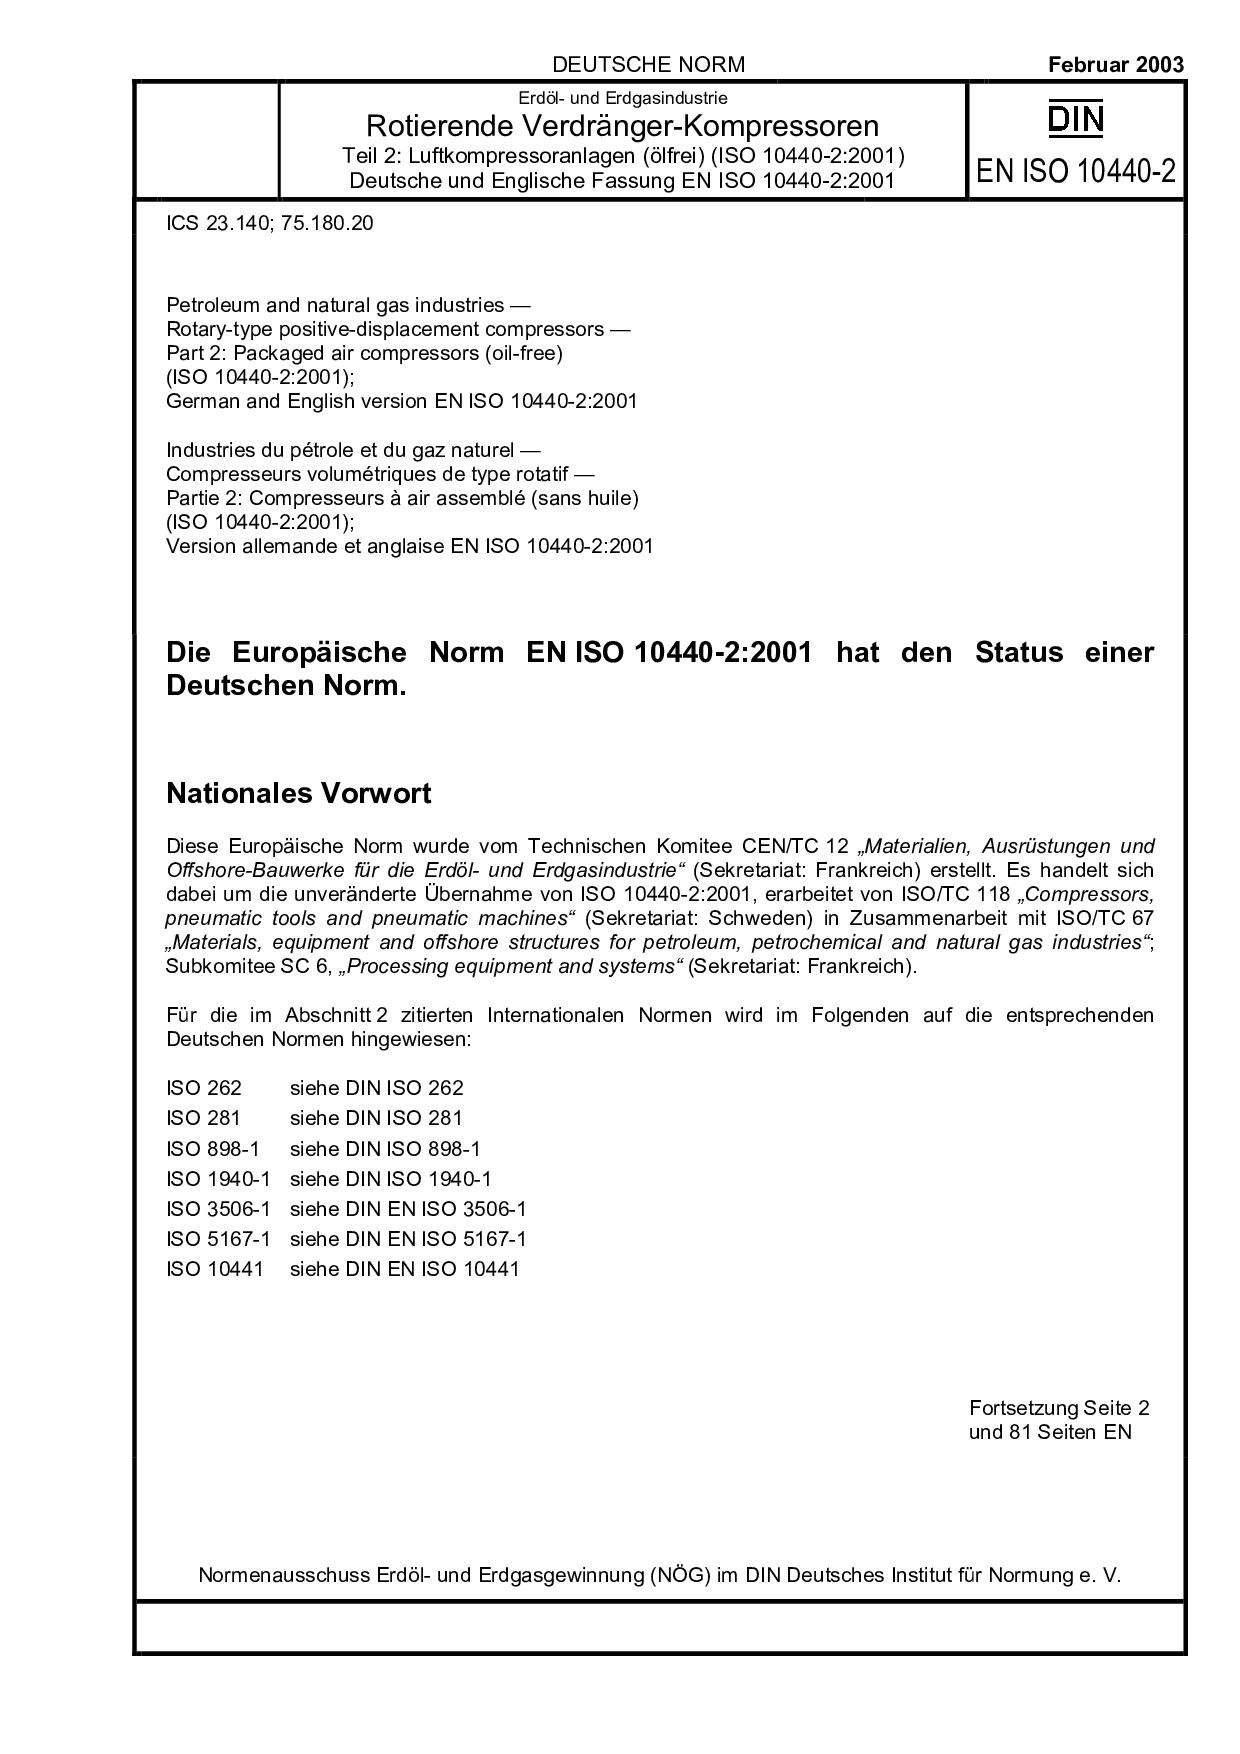 DIN EN ISO 10440-2:2003